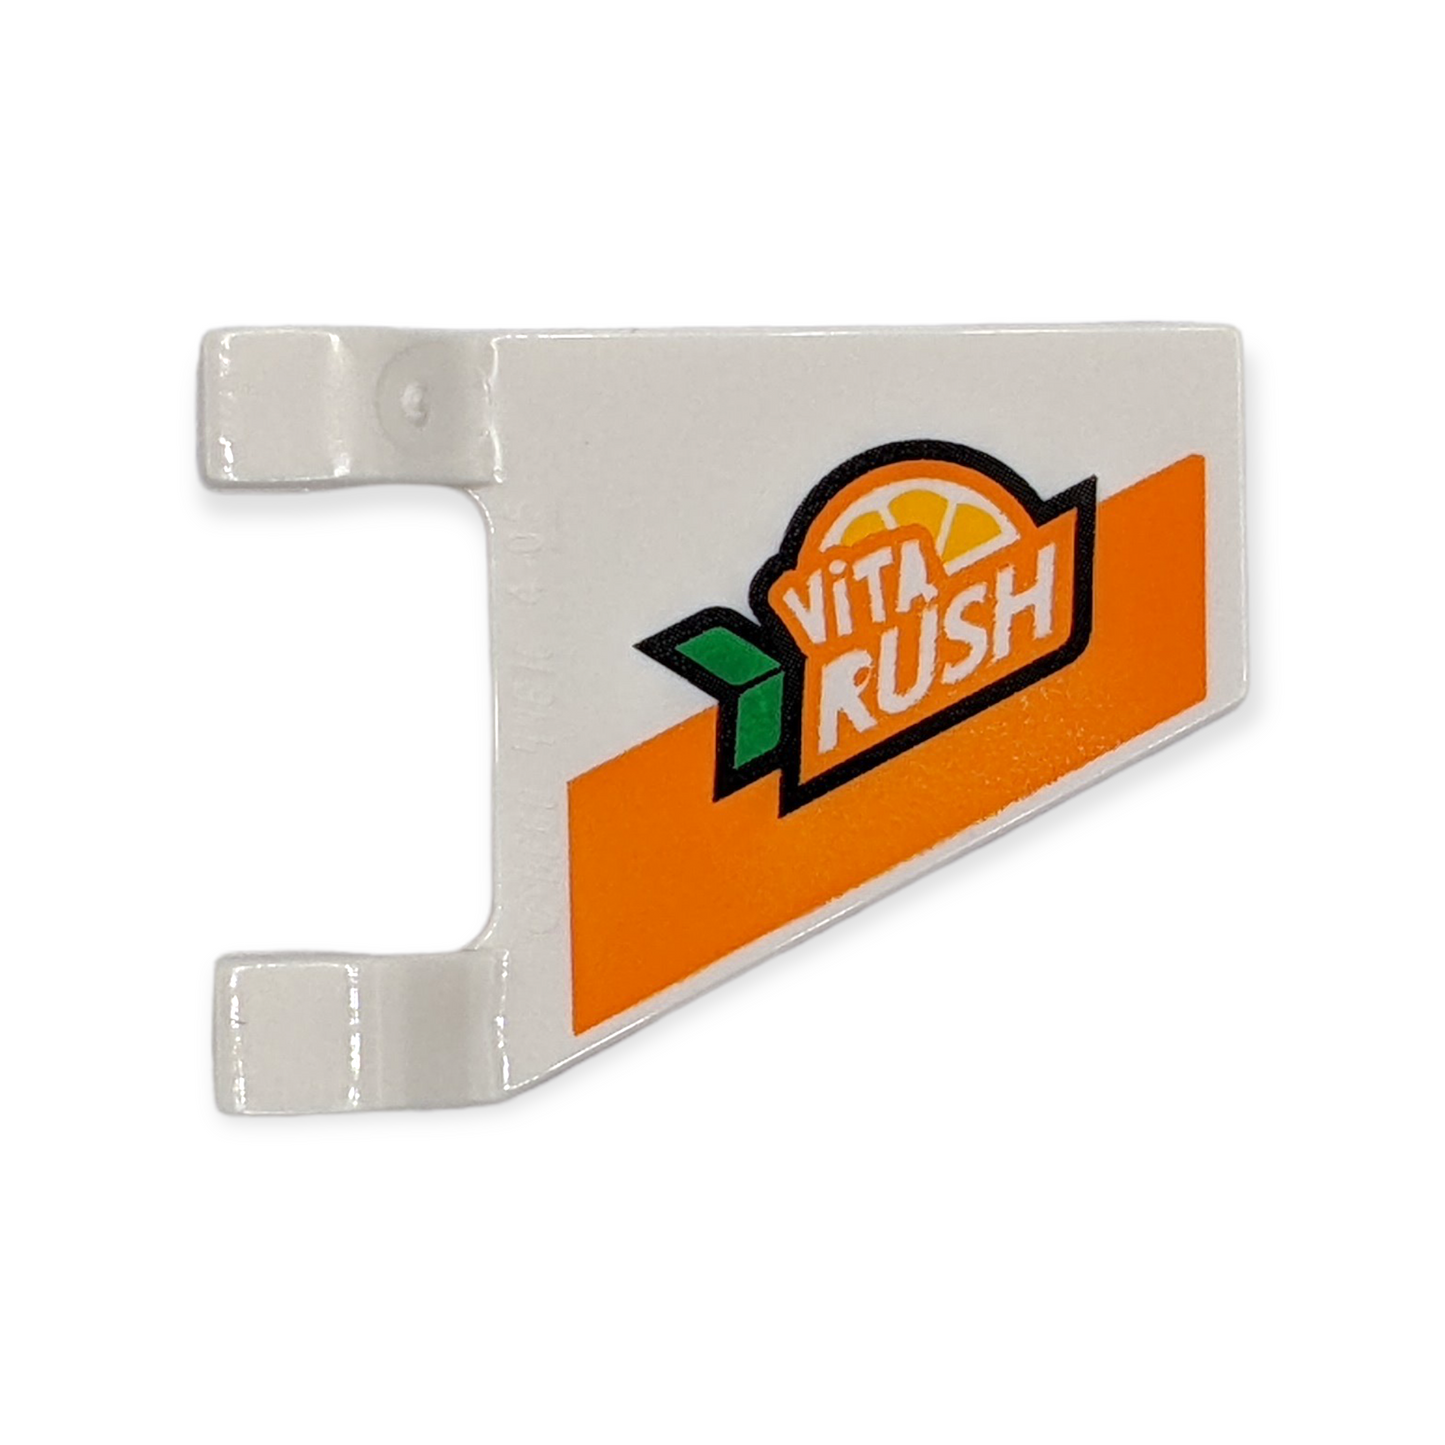 LEGO Flag 2x2 - VITA RUSH Logo